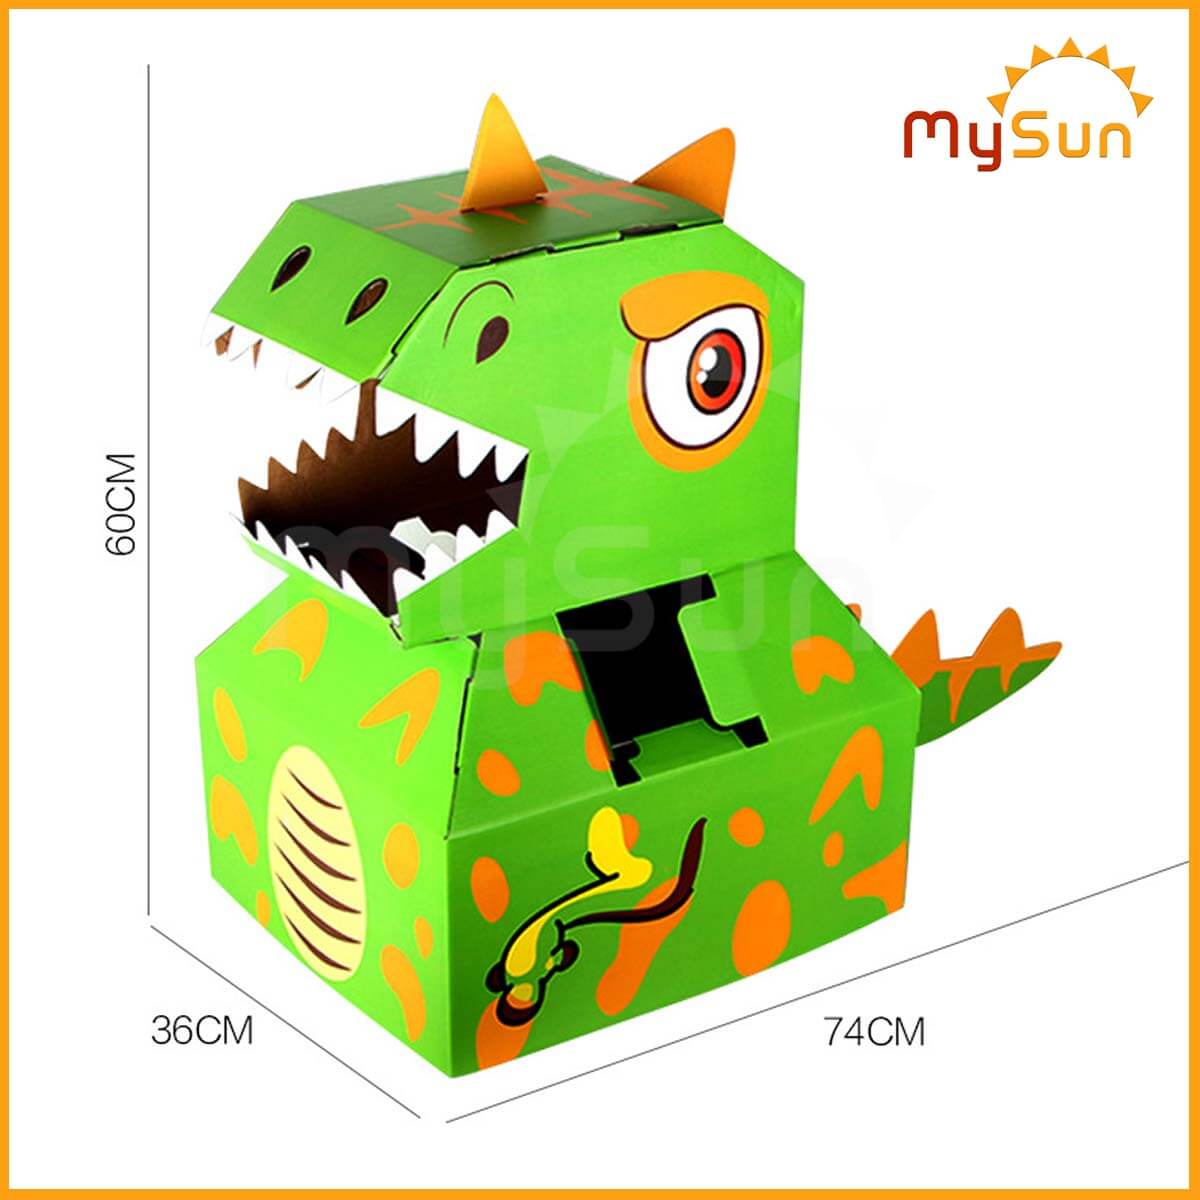 Đồ chơi lắp ráp, ghép khủng long cho bé hóa trang bằng bìa carton MySun